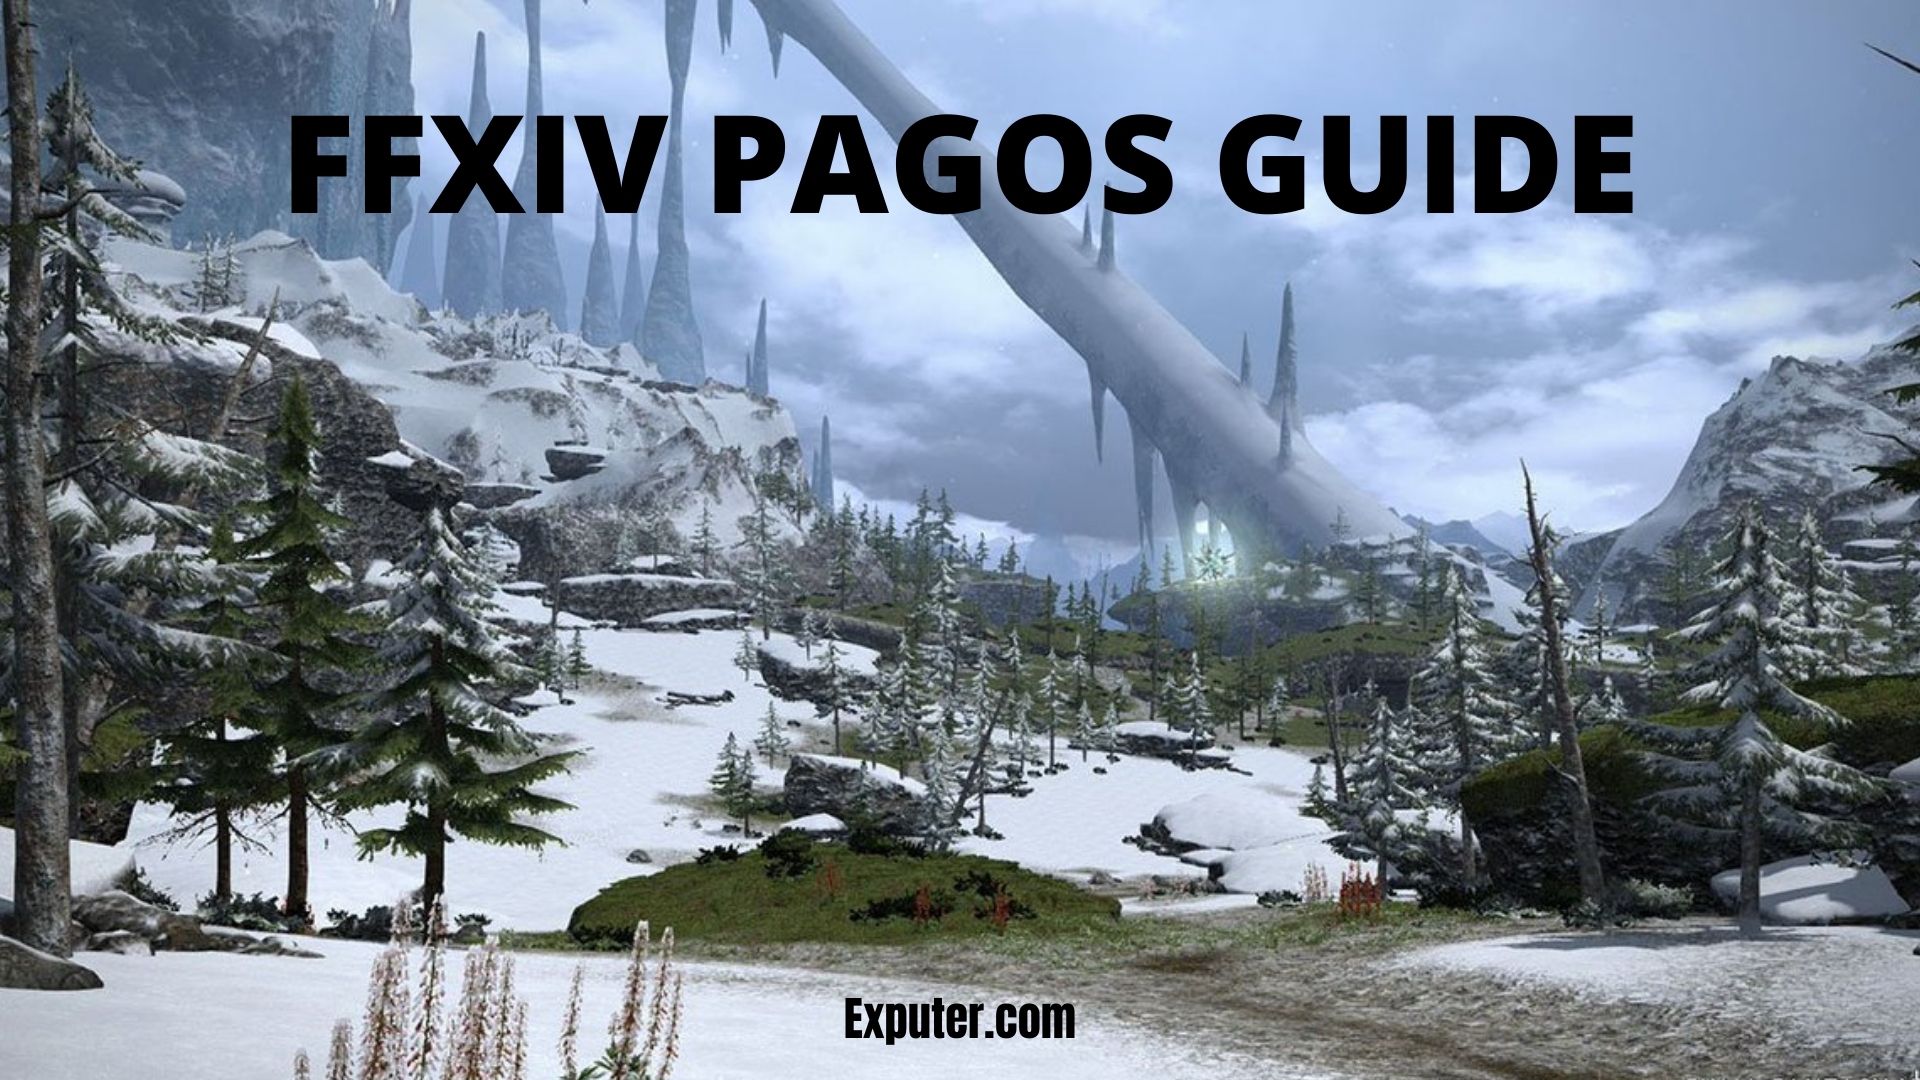 FFXIV Pagos Guide For Eureka Walkthrough EXputer Com